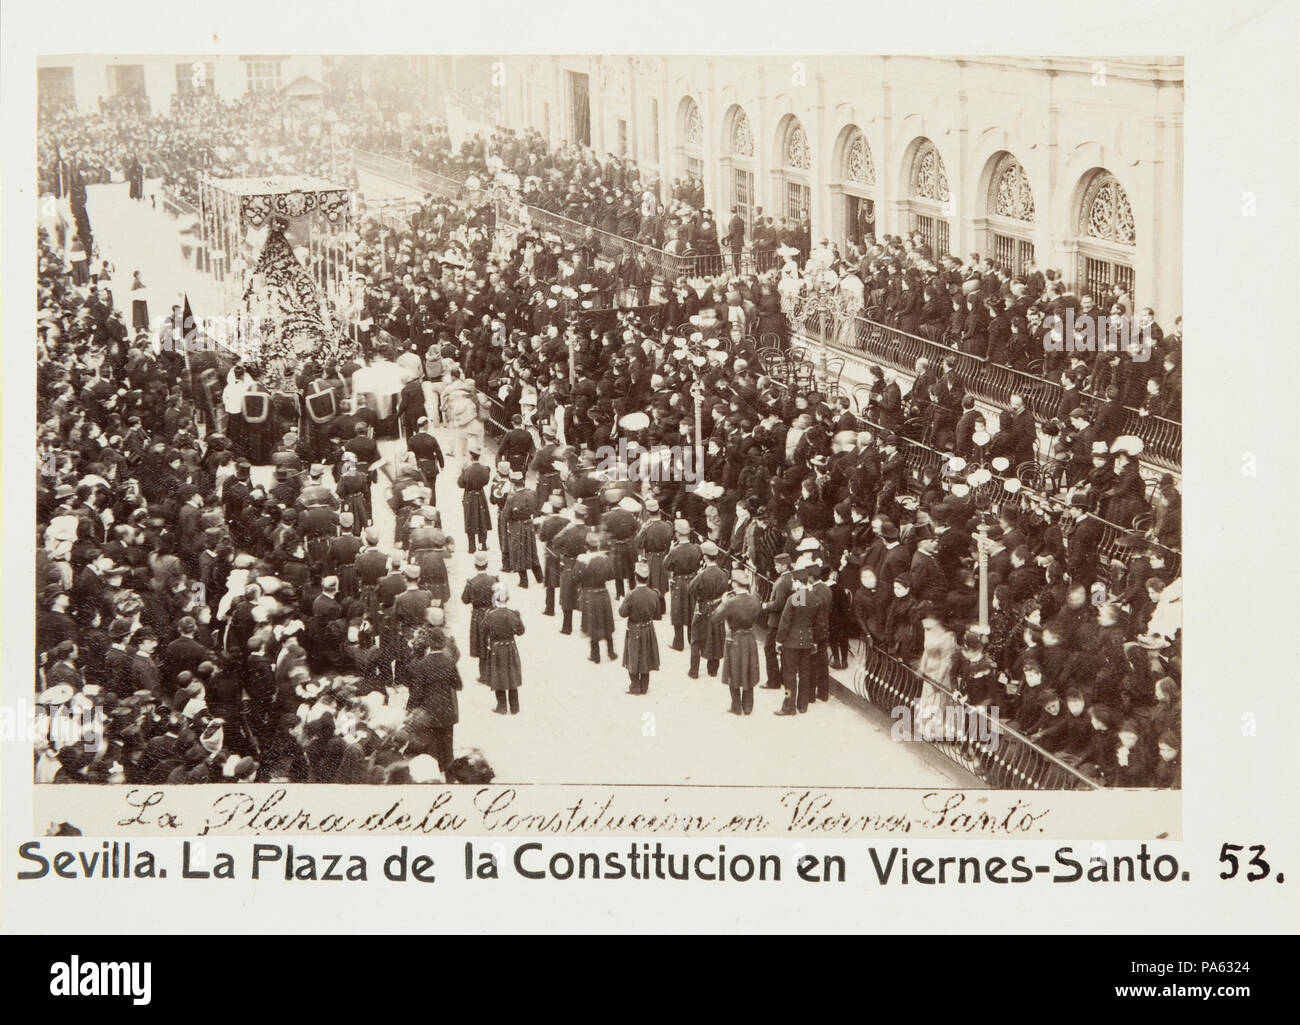 88 Fotografi av Sevilla. La Plaza de la Constitucion en Viernes-Santo - Hallwylska museet - 104800 Stock Photo